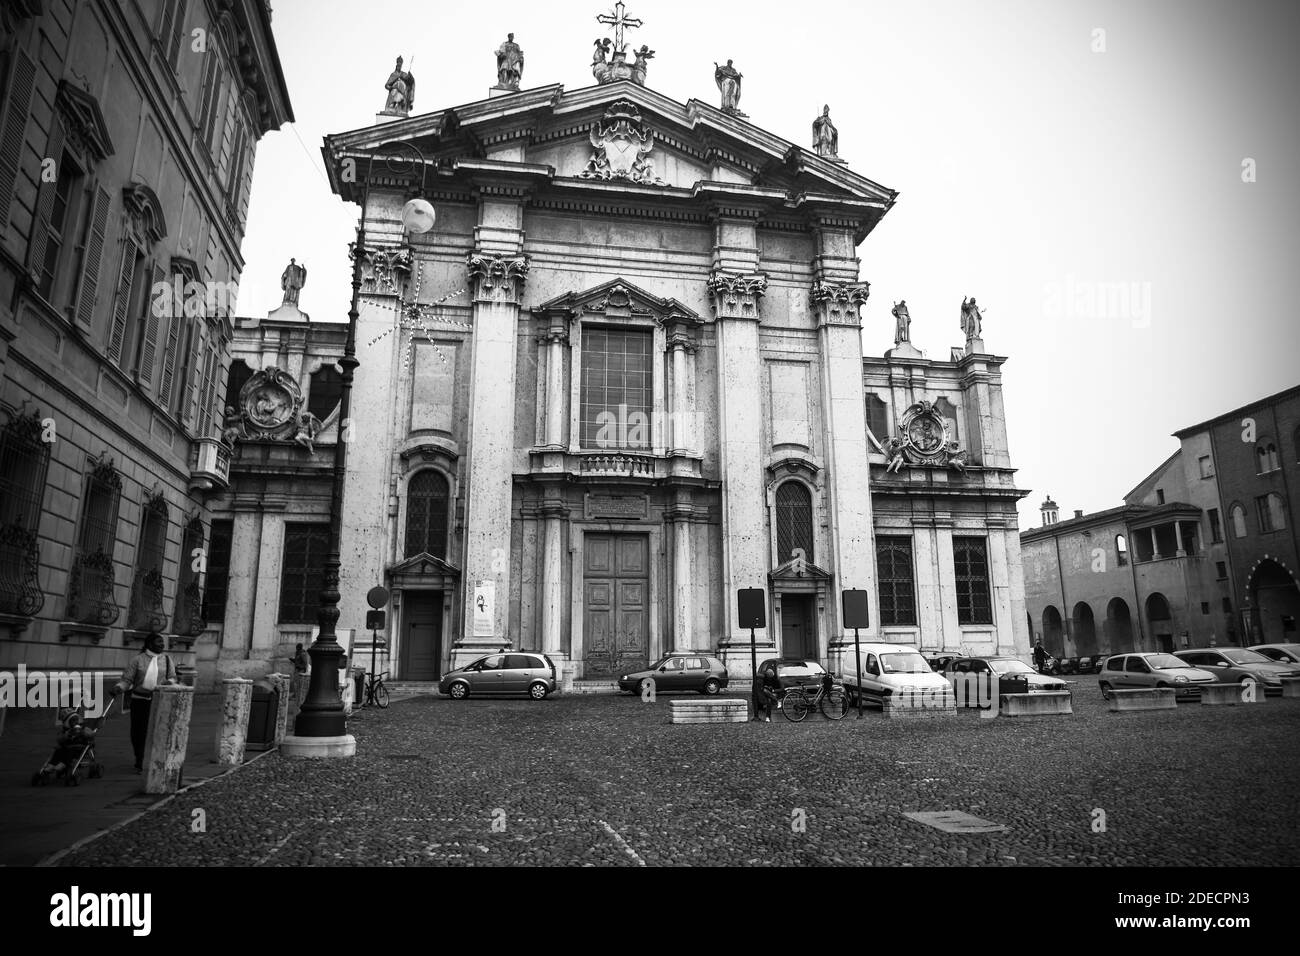 Mantua, Lombardei, Italien, Dezember 2015: Die Kathedrale von San Pietro Apostolo auf Renaissance-Platz Piazza Sordello, Mantua, während der Weihnachtszeit. Schwarzweiß-Fotografie. Stockfoto